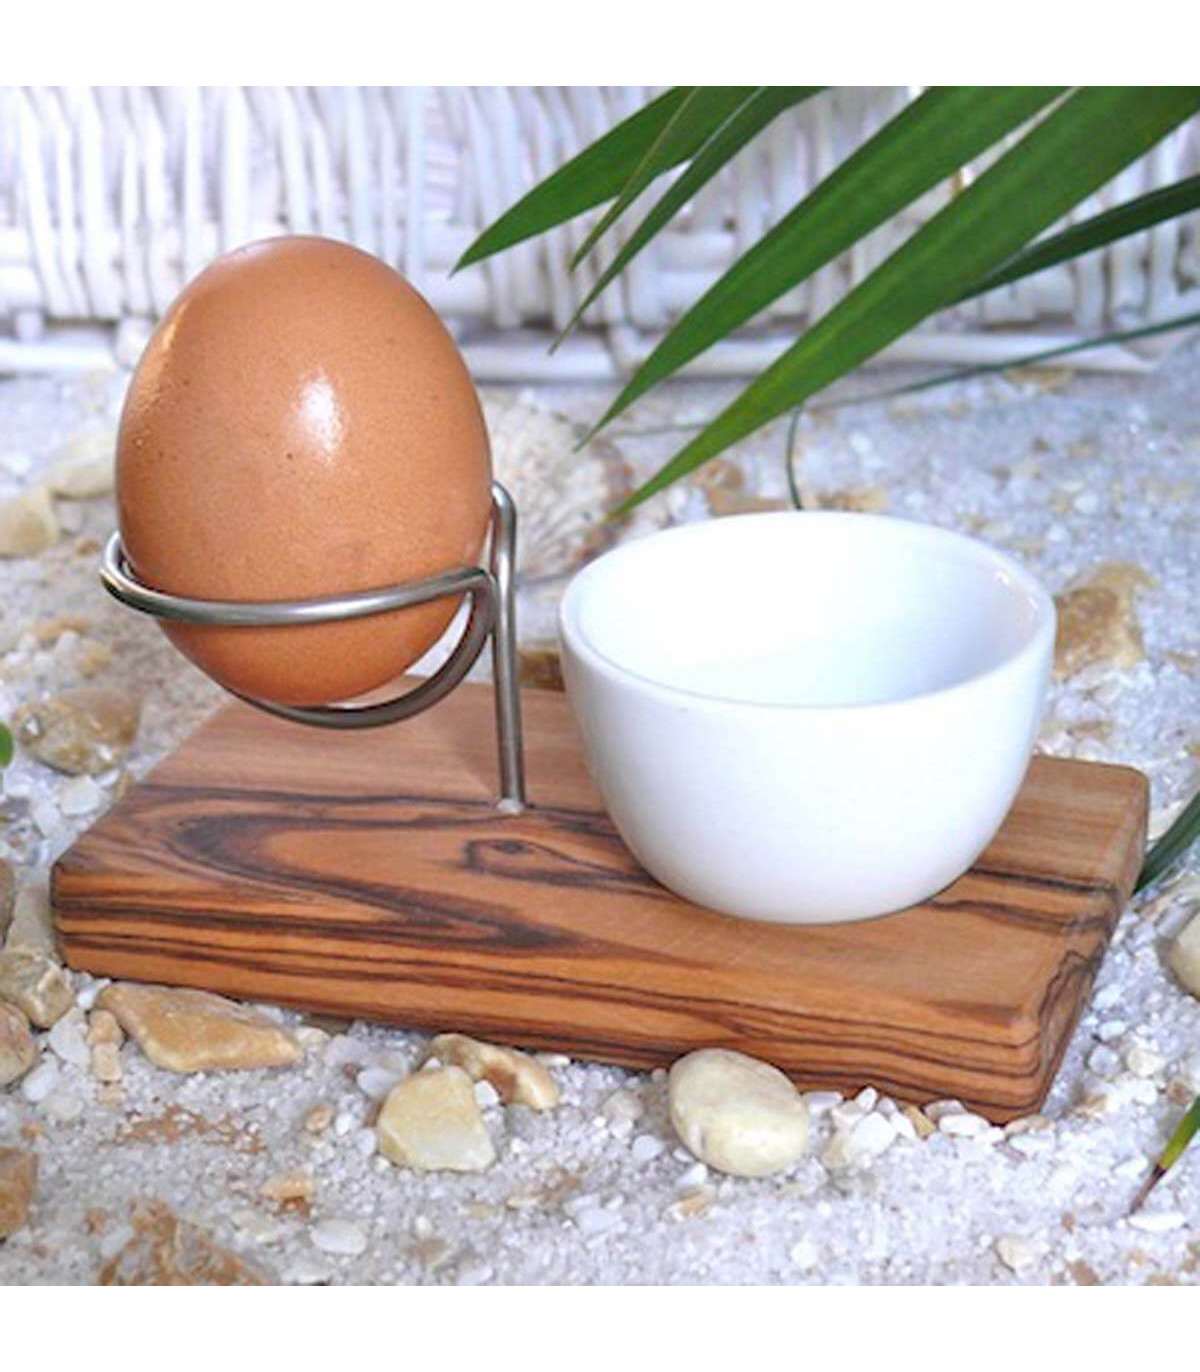 https://takaterra.com/3363-superlarge_default/olive-wood-steel-egg-holder-olivenholz.jpg